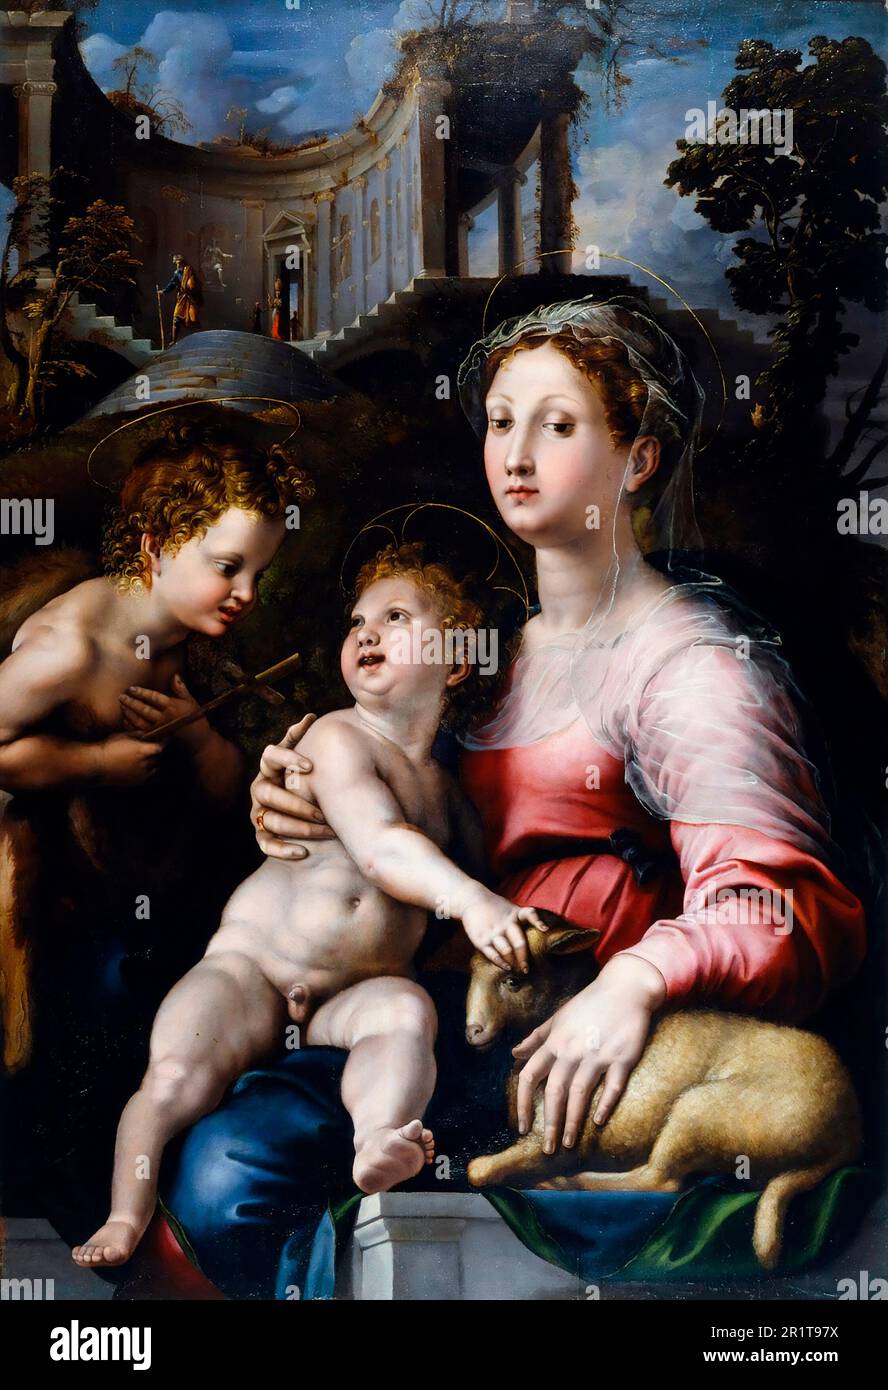 La Madonna et l'enfant avec Saint Jean-Baptiste par le peintre et architecte italien Giulio Romano (Giulio Pippi, c. 1499-1546), huile sur panneau, c. 1522-24 Banque D'Images